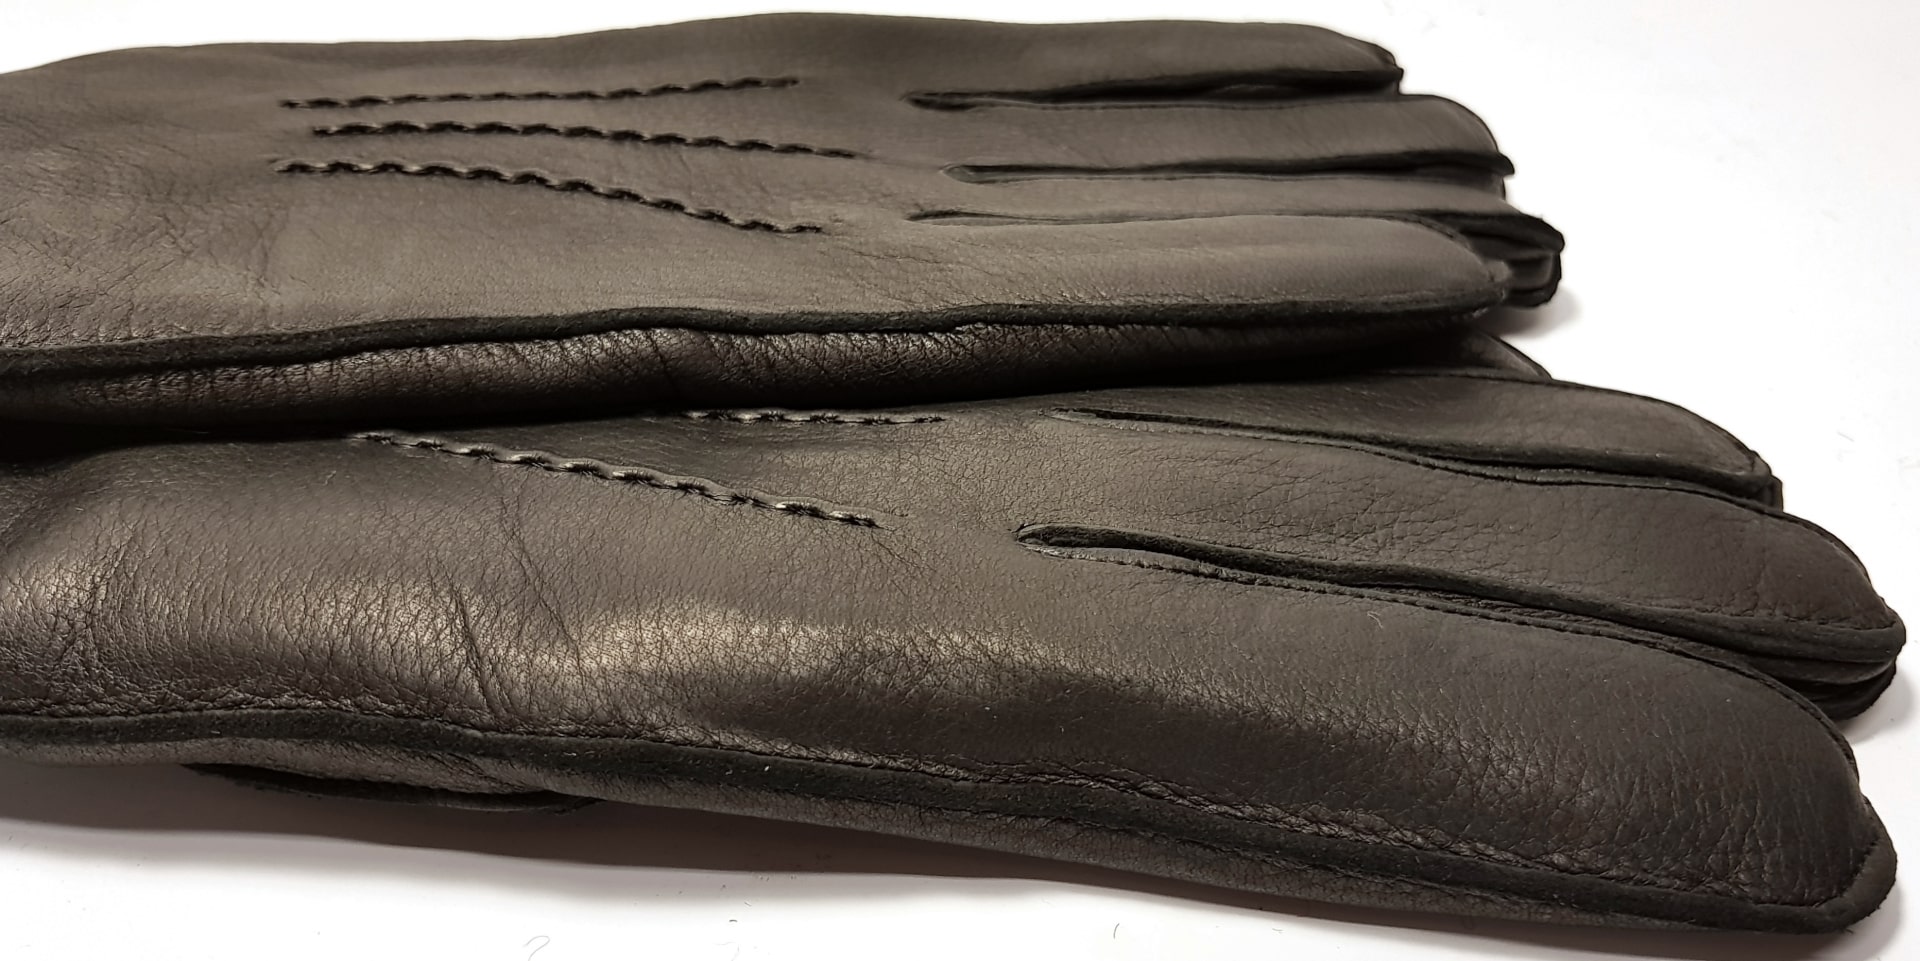 мужские перчатки оленья кожа / натуральный мех